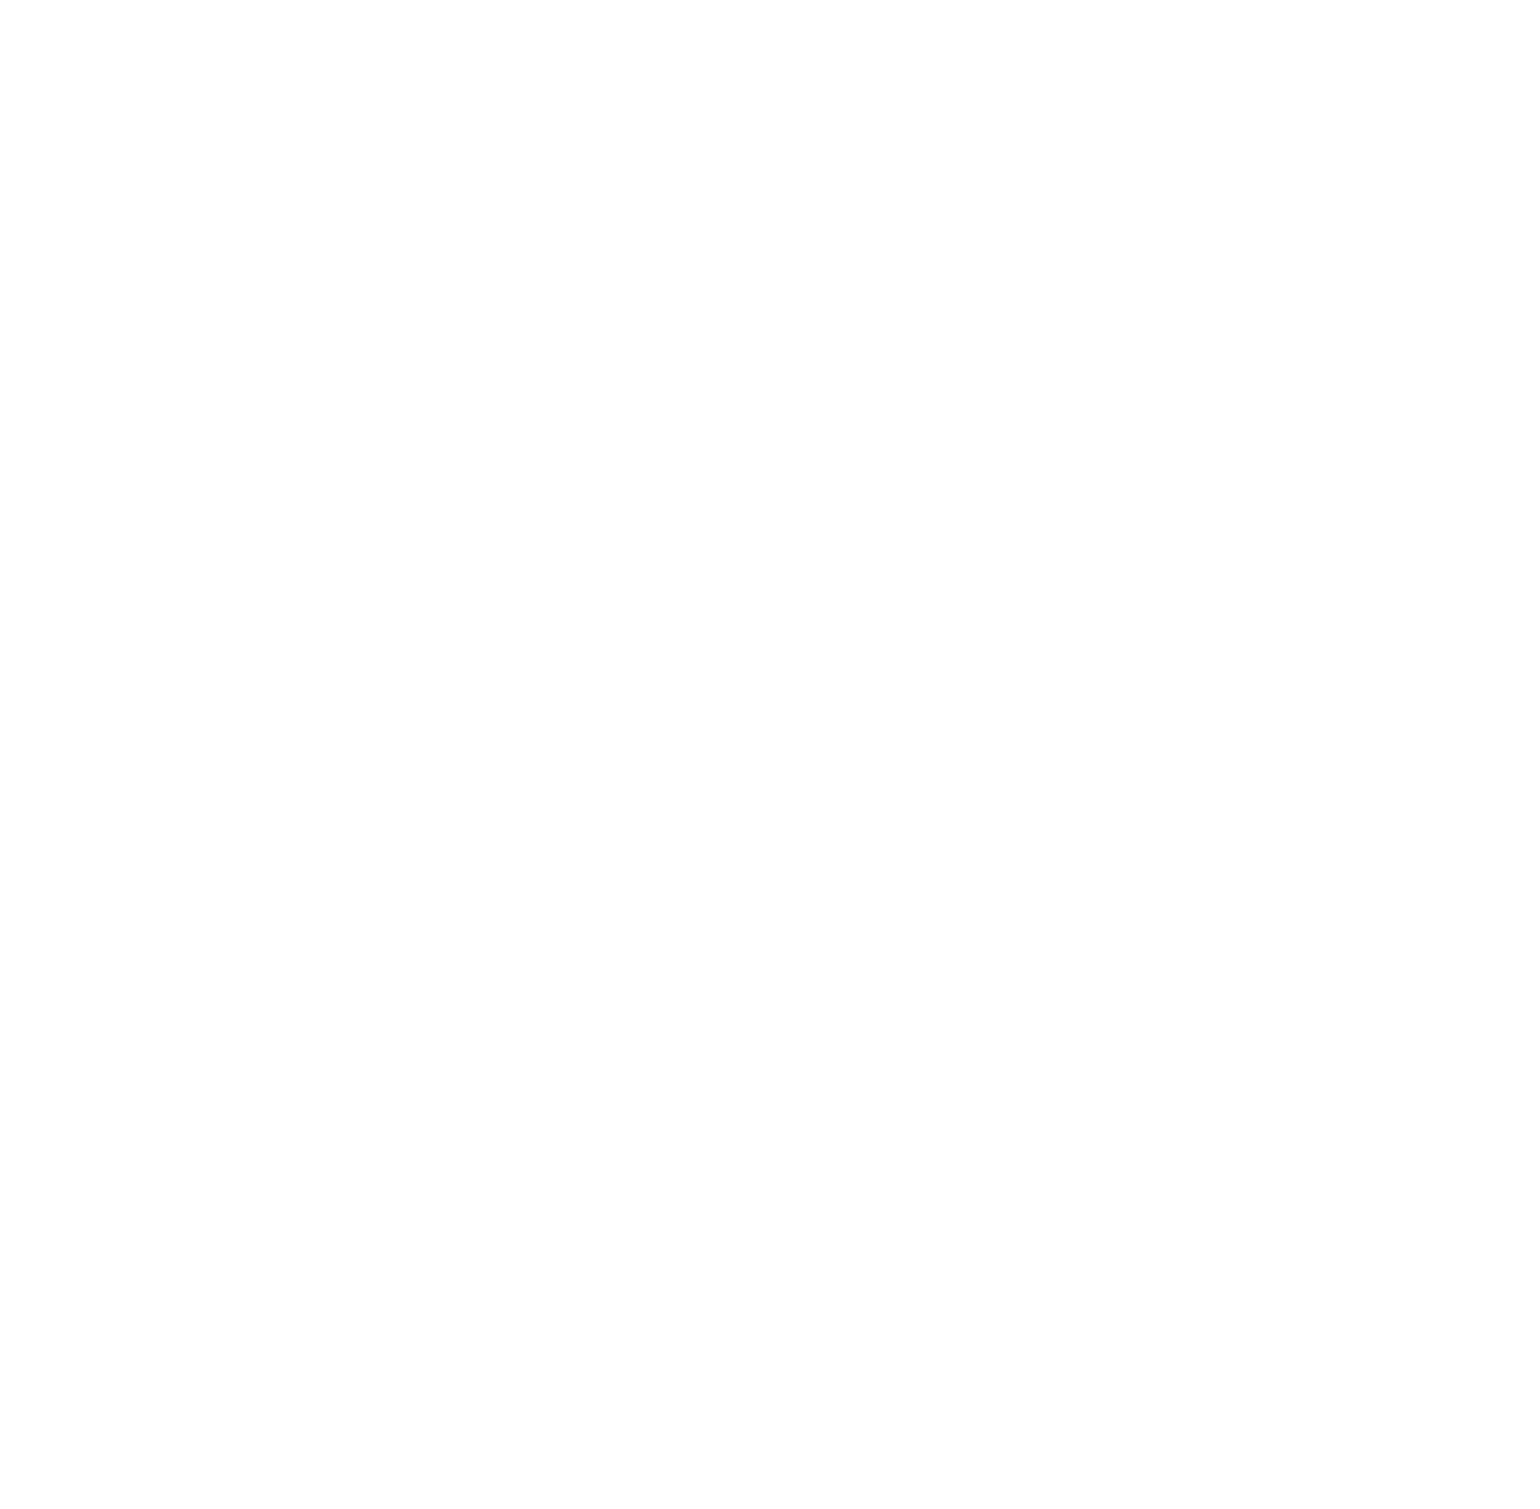 Verisk Analytics logo for dark backgrounds (transparent PNG)